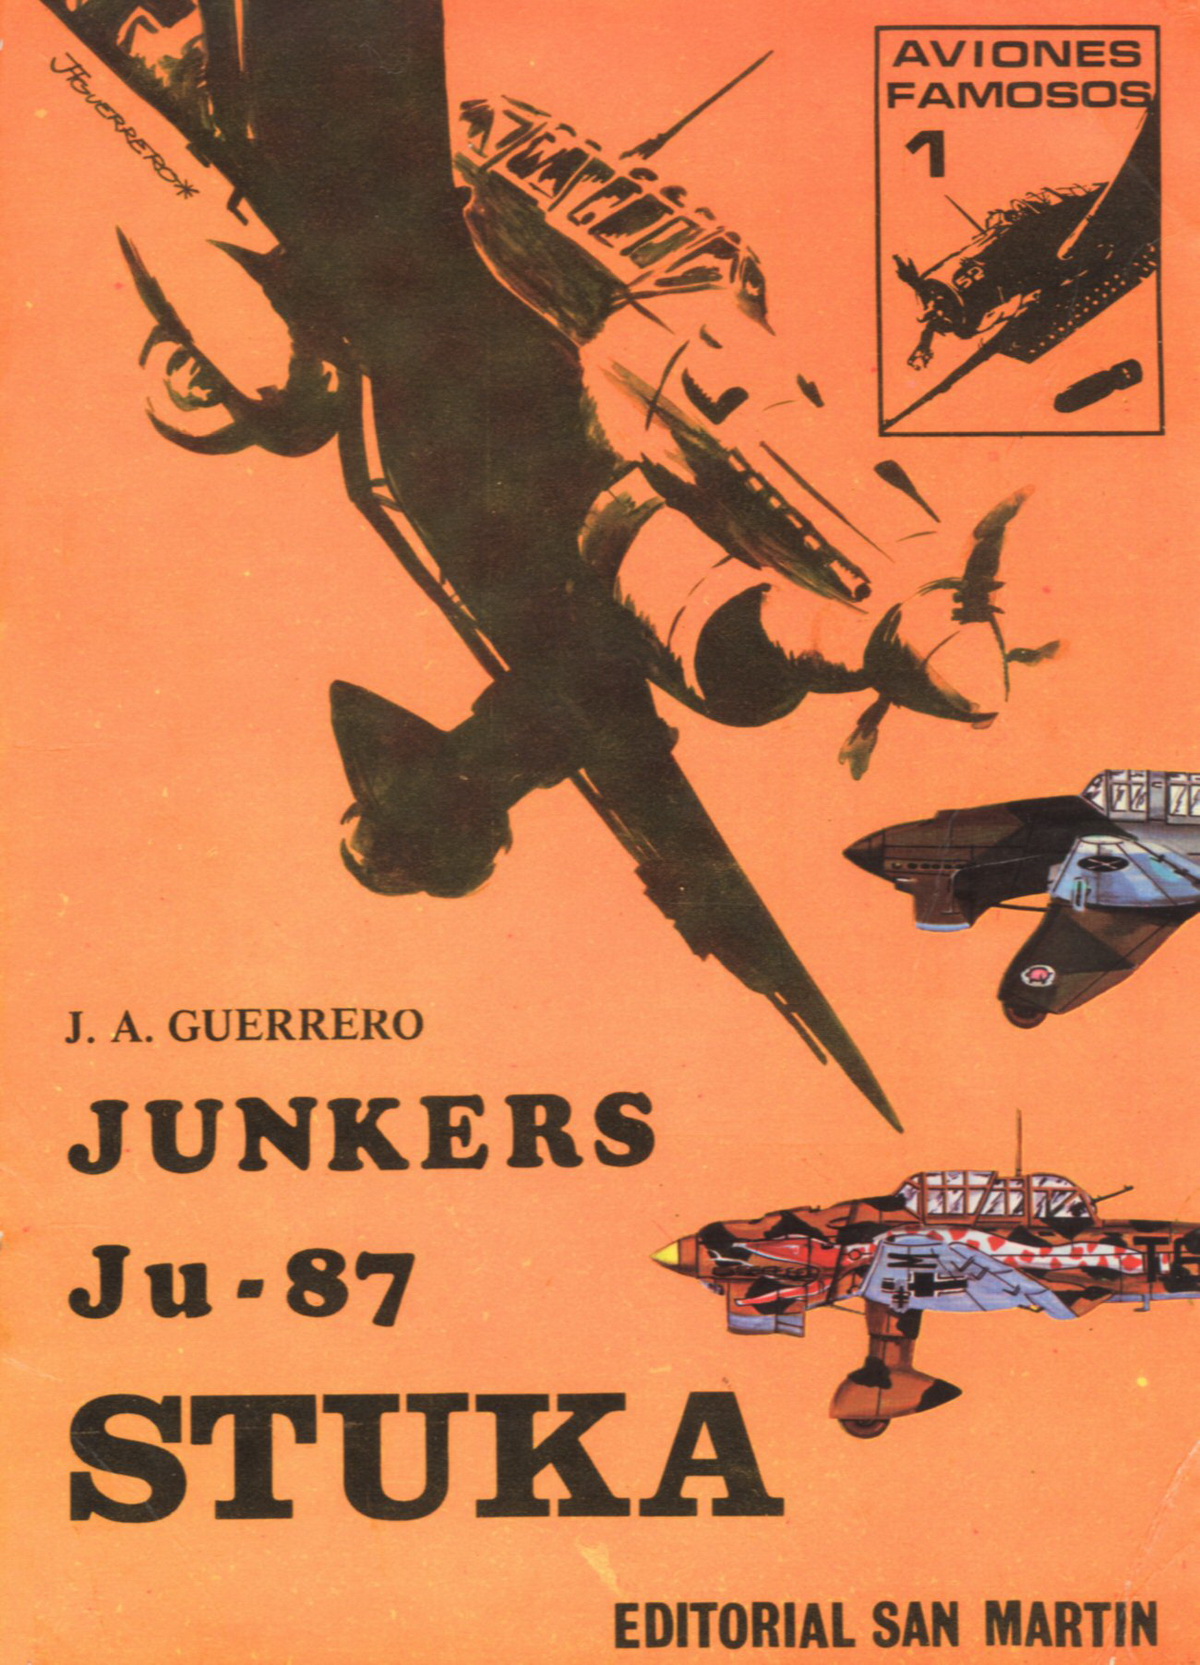 REF Junkers Ju 87 Stuka Aviones Famosos 1 J.A. Guerrero 0A